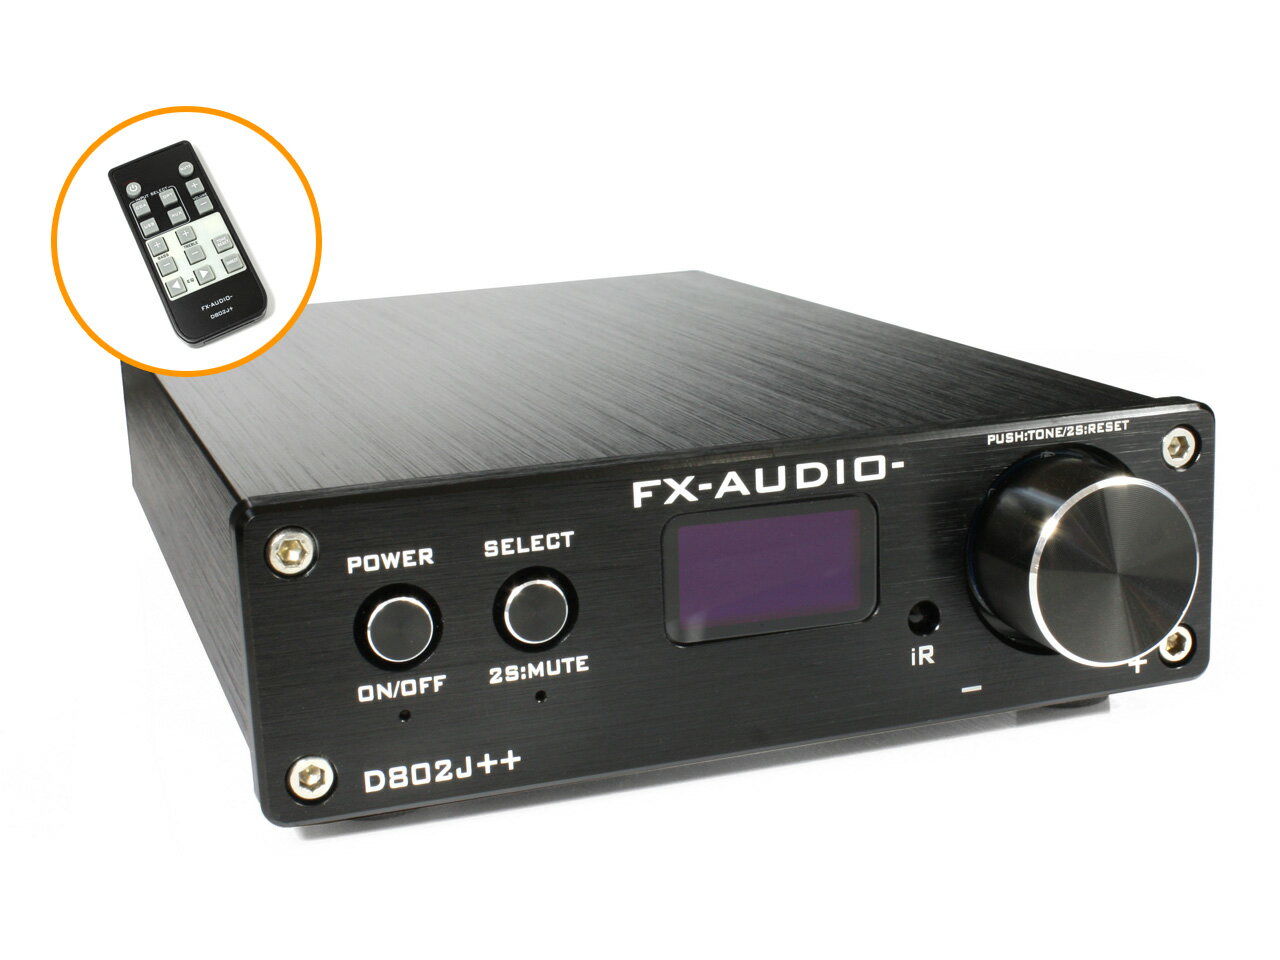 送料無料 FX-AUDIO- D802J++ [ブラック] デジタル3系統24bit/192kHz対 ...